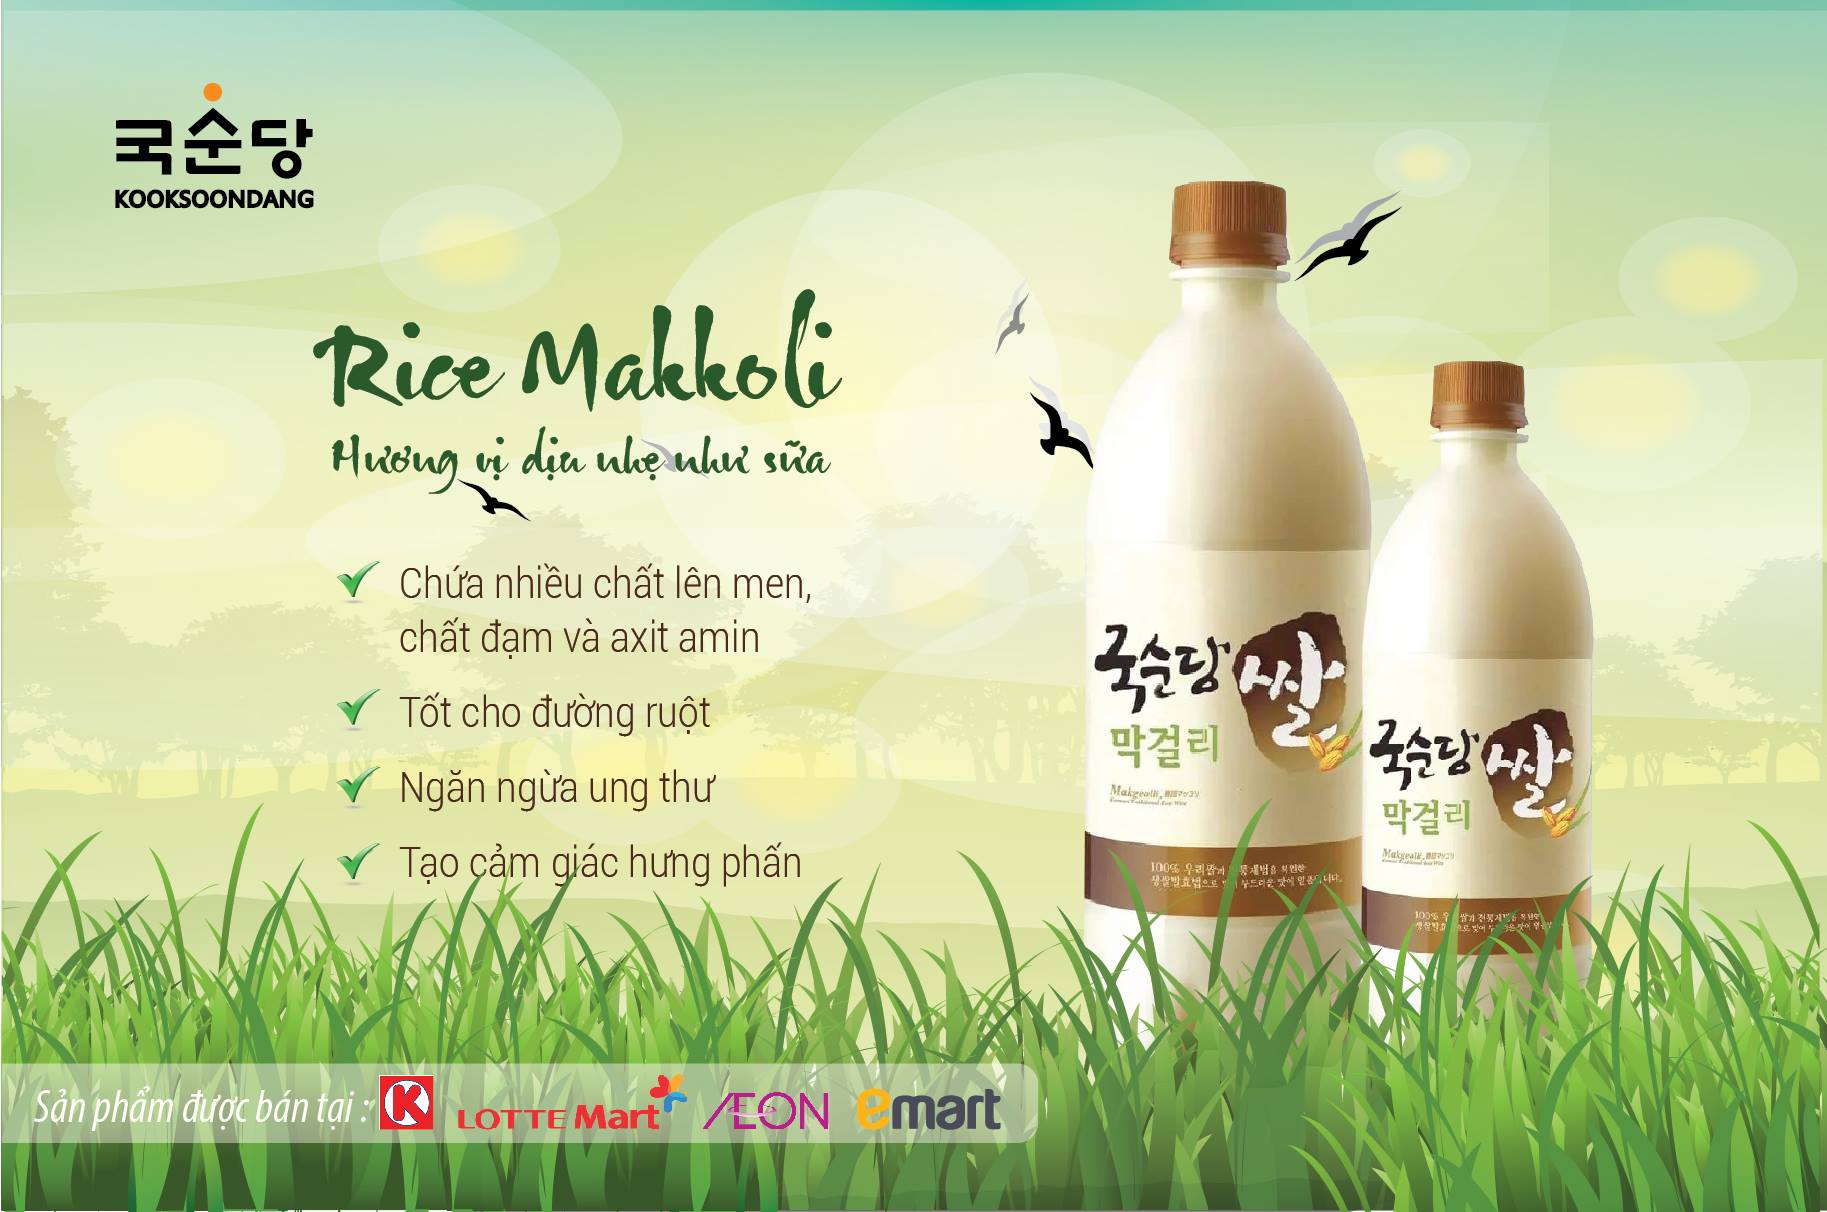 (Photo: an image of KOOKSOONDANG’s rice Makgeolli.)